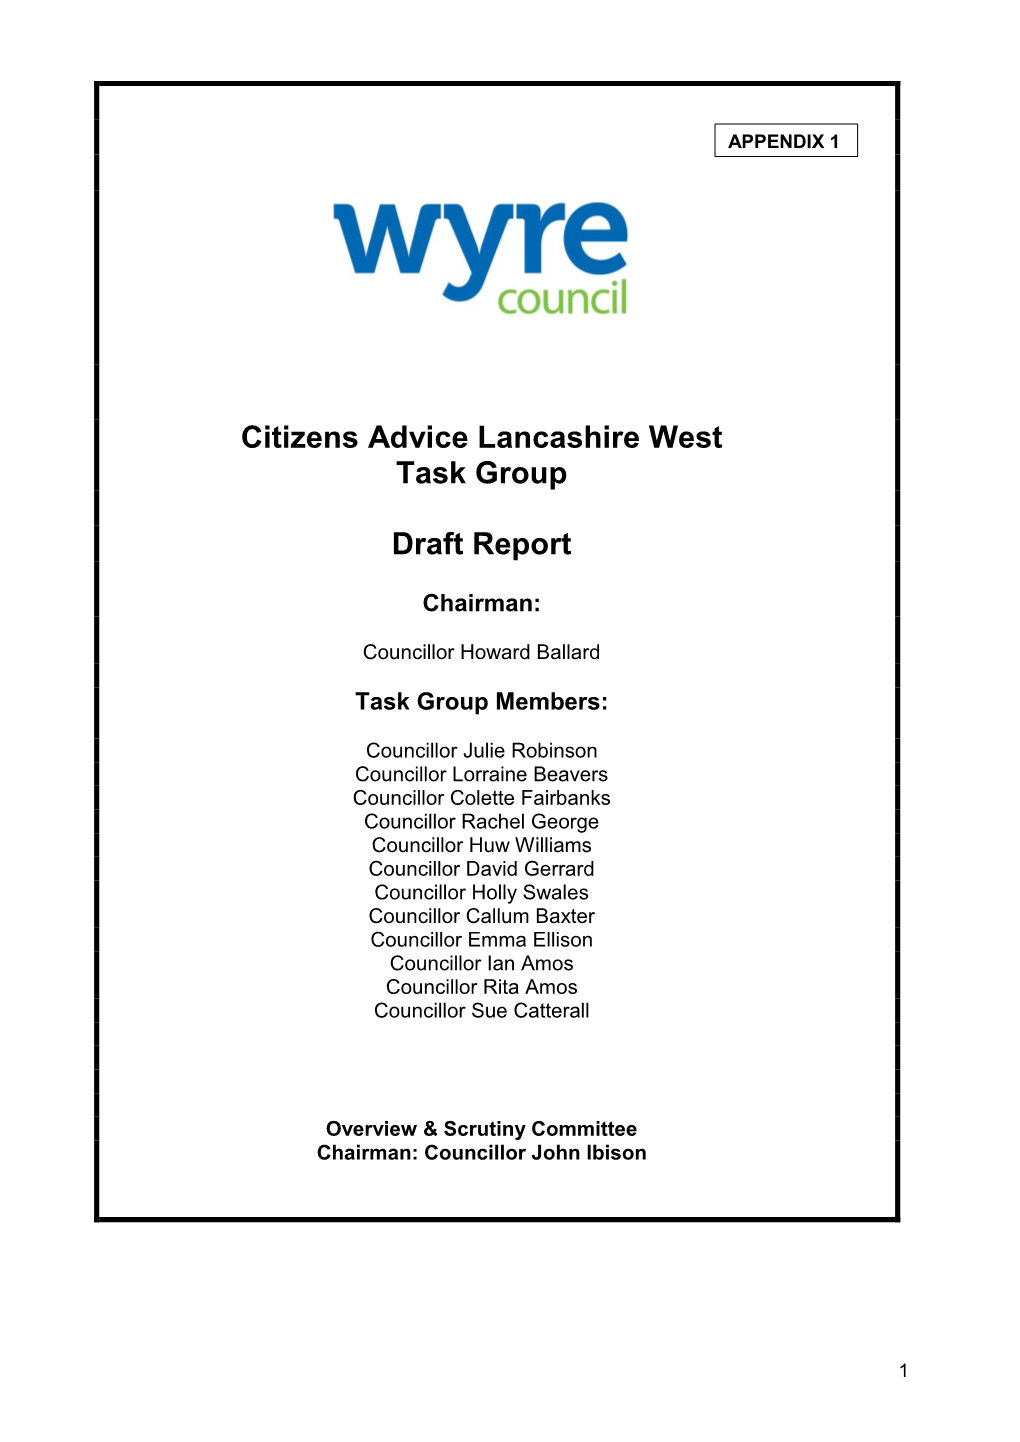 Citizens Advice Lancashire West Task Group